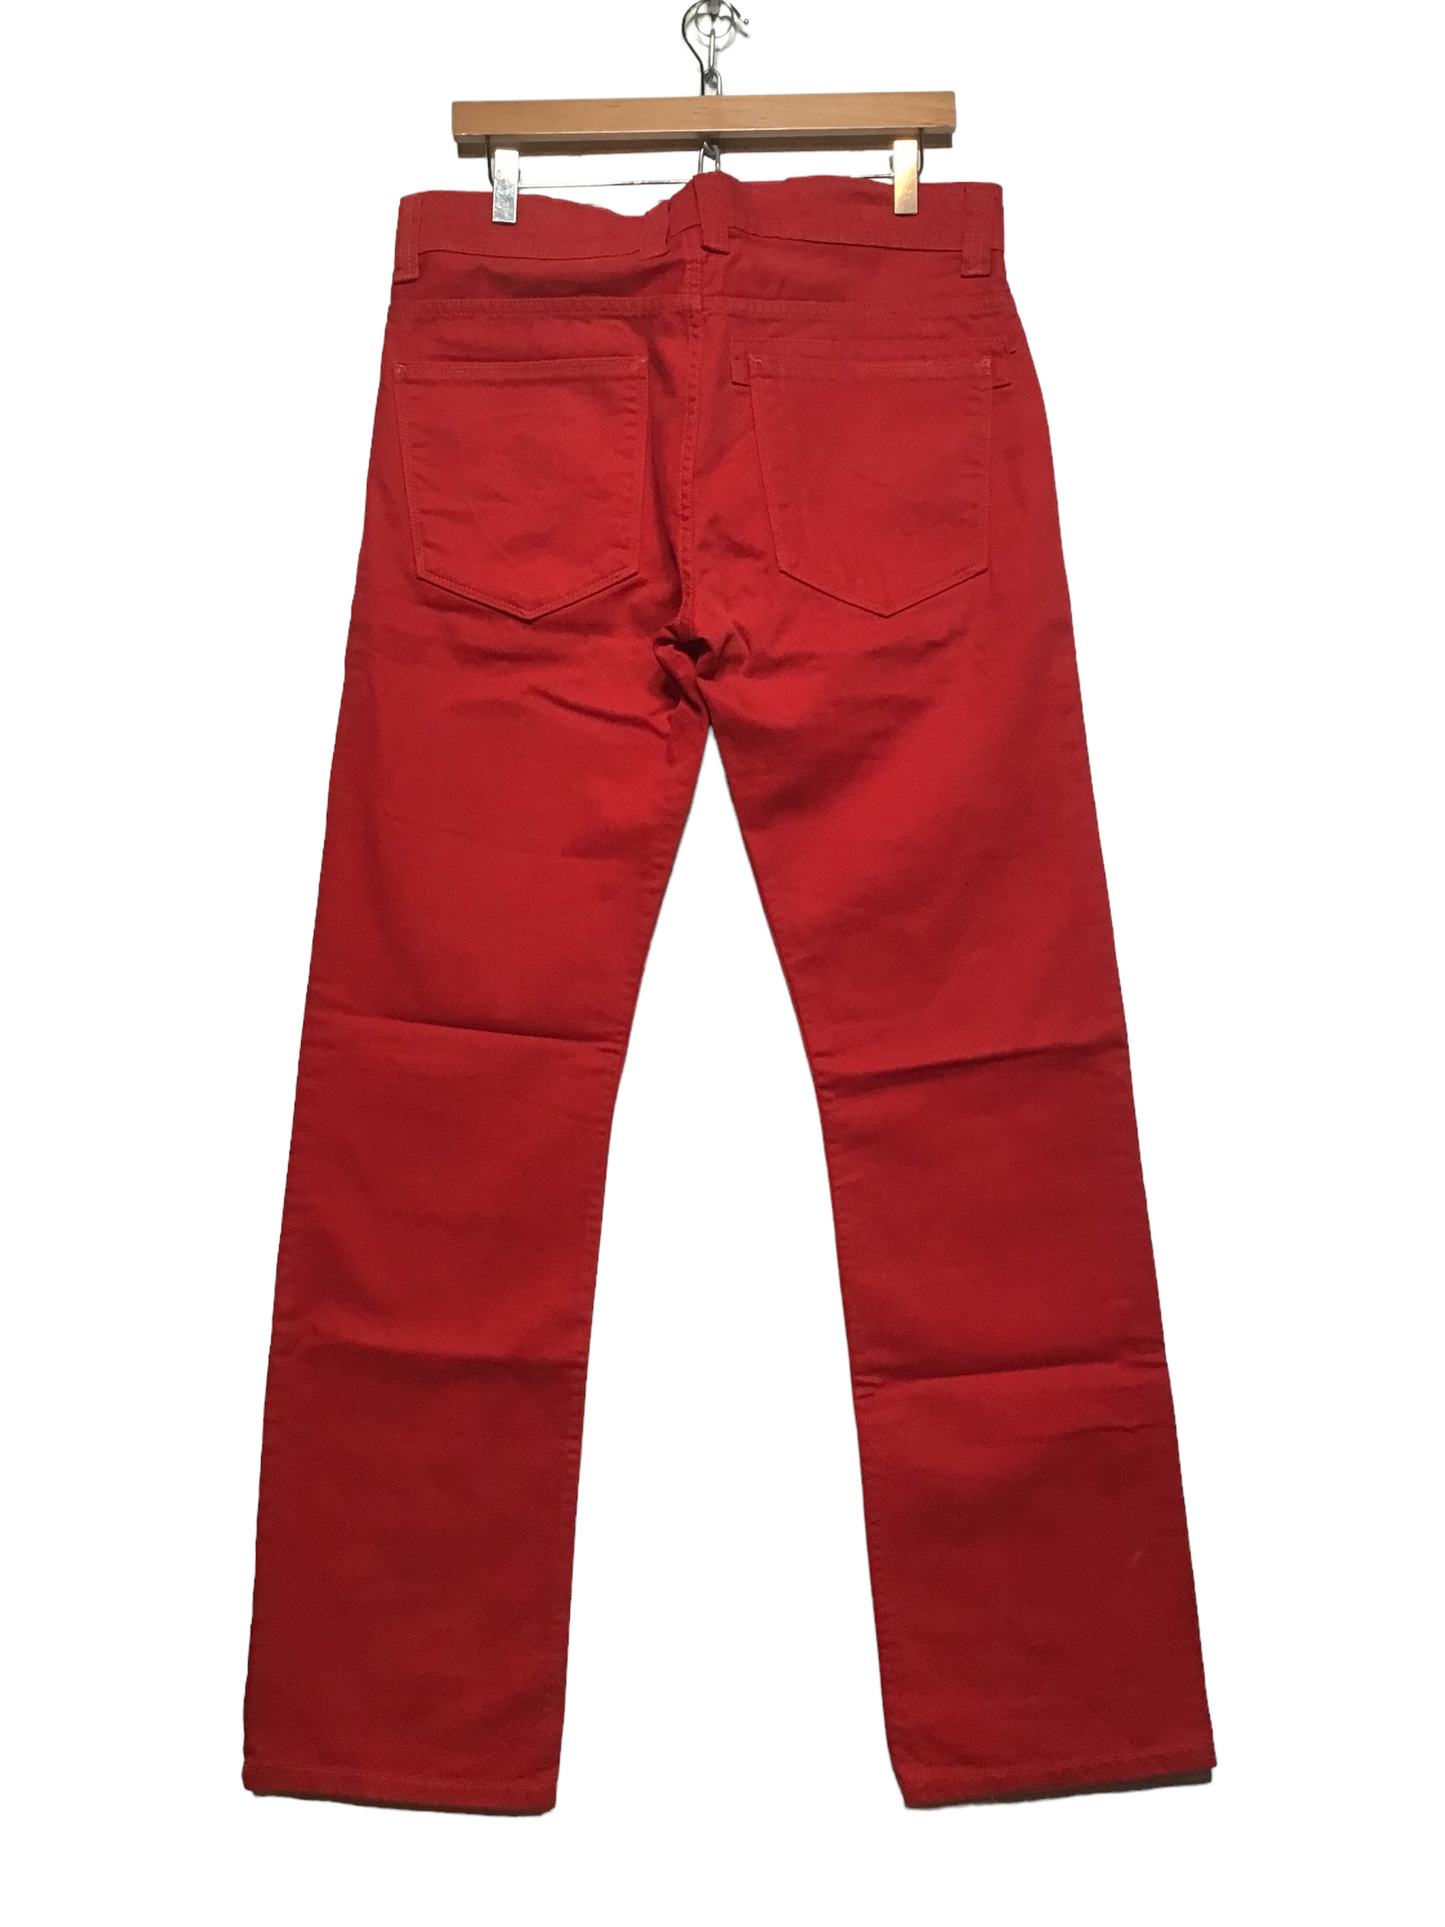 Puma Ferrari Red Jeans (34X34)